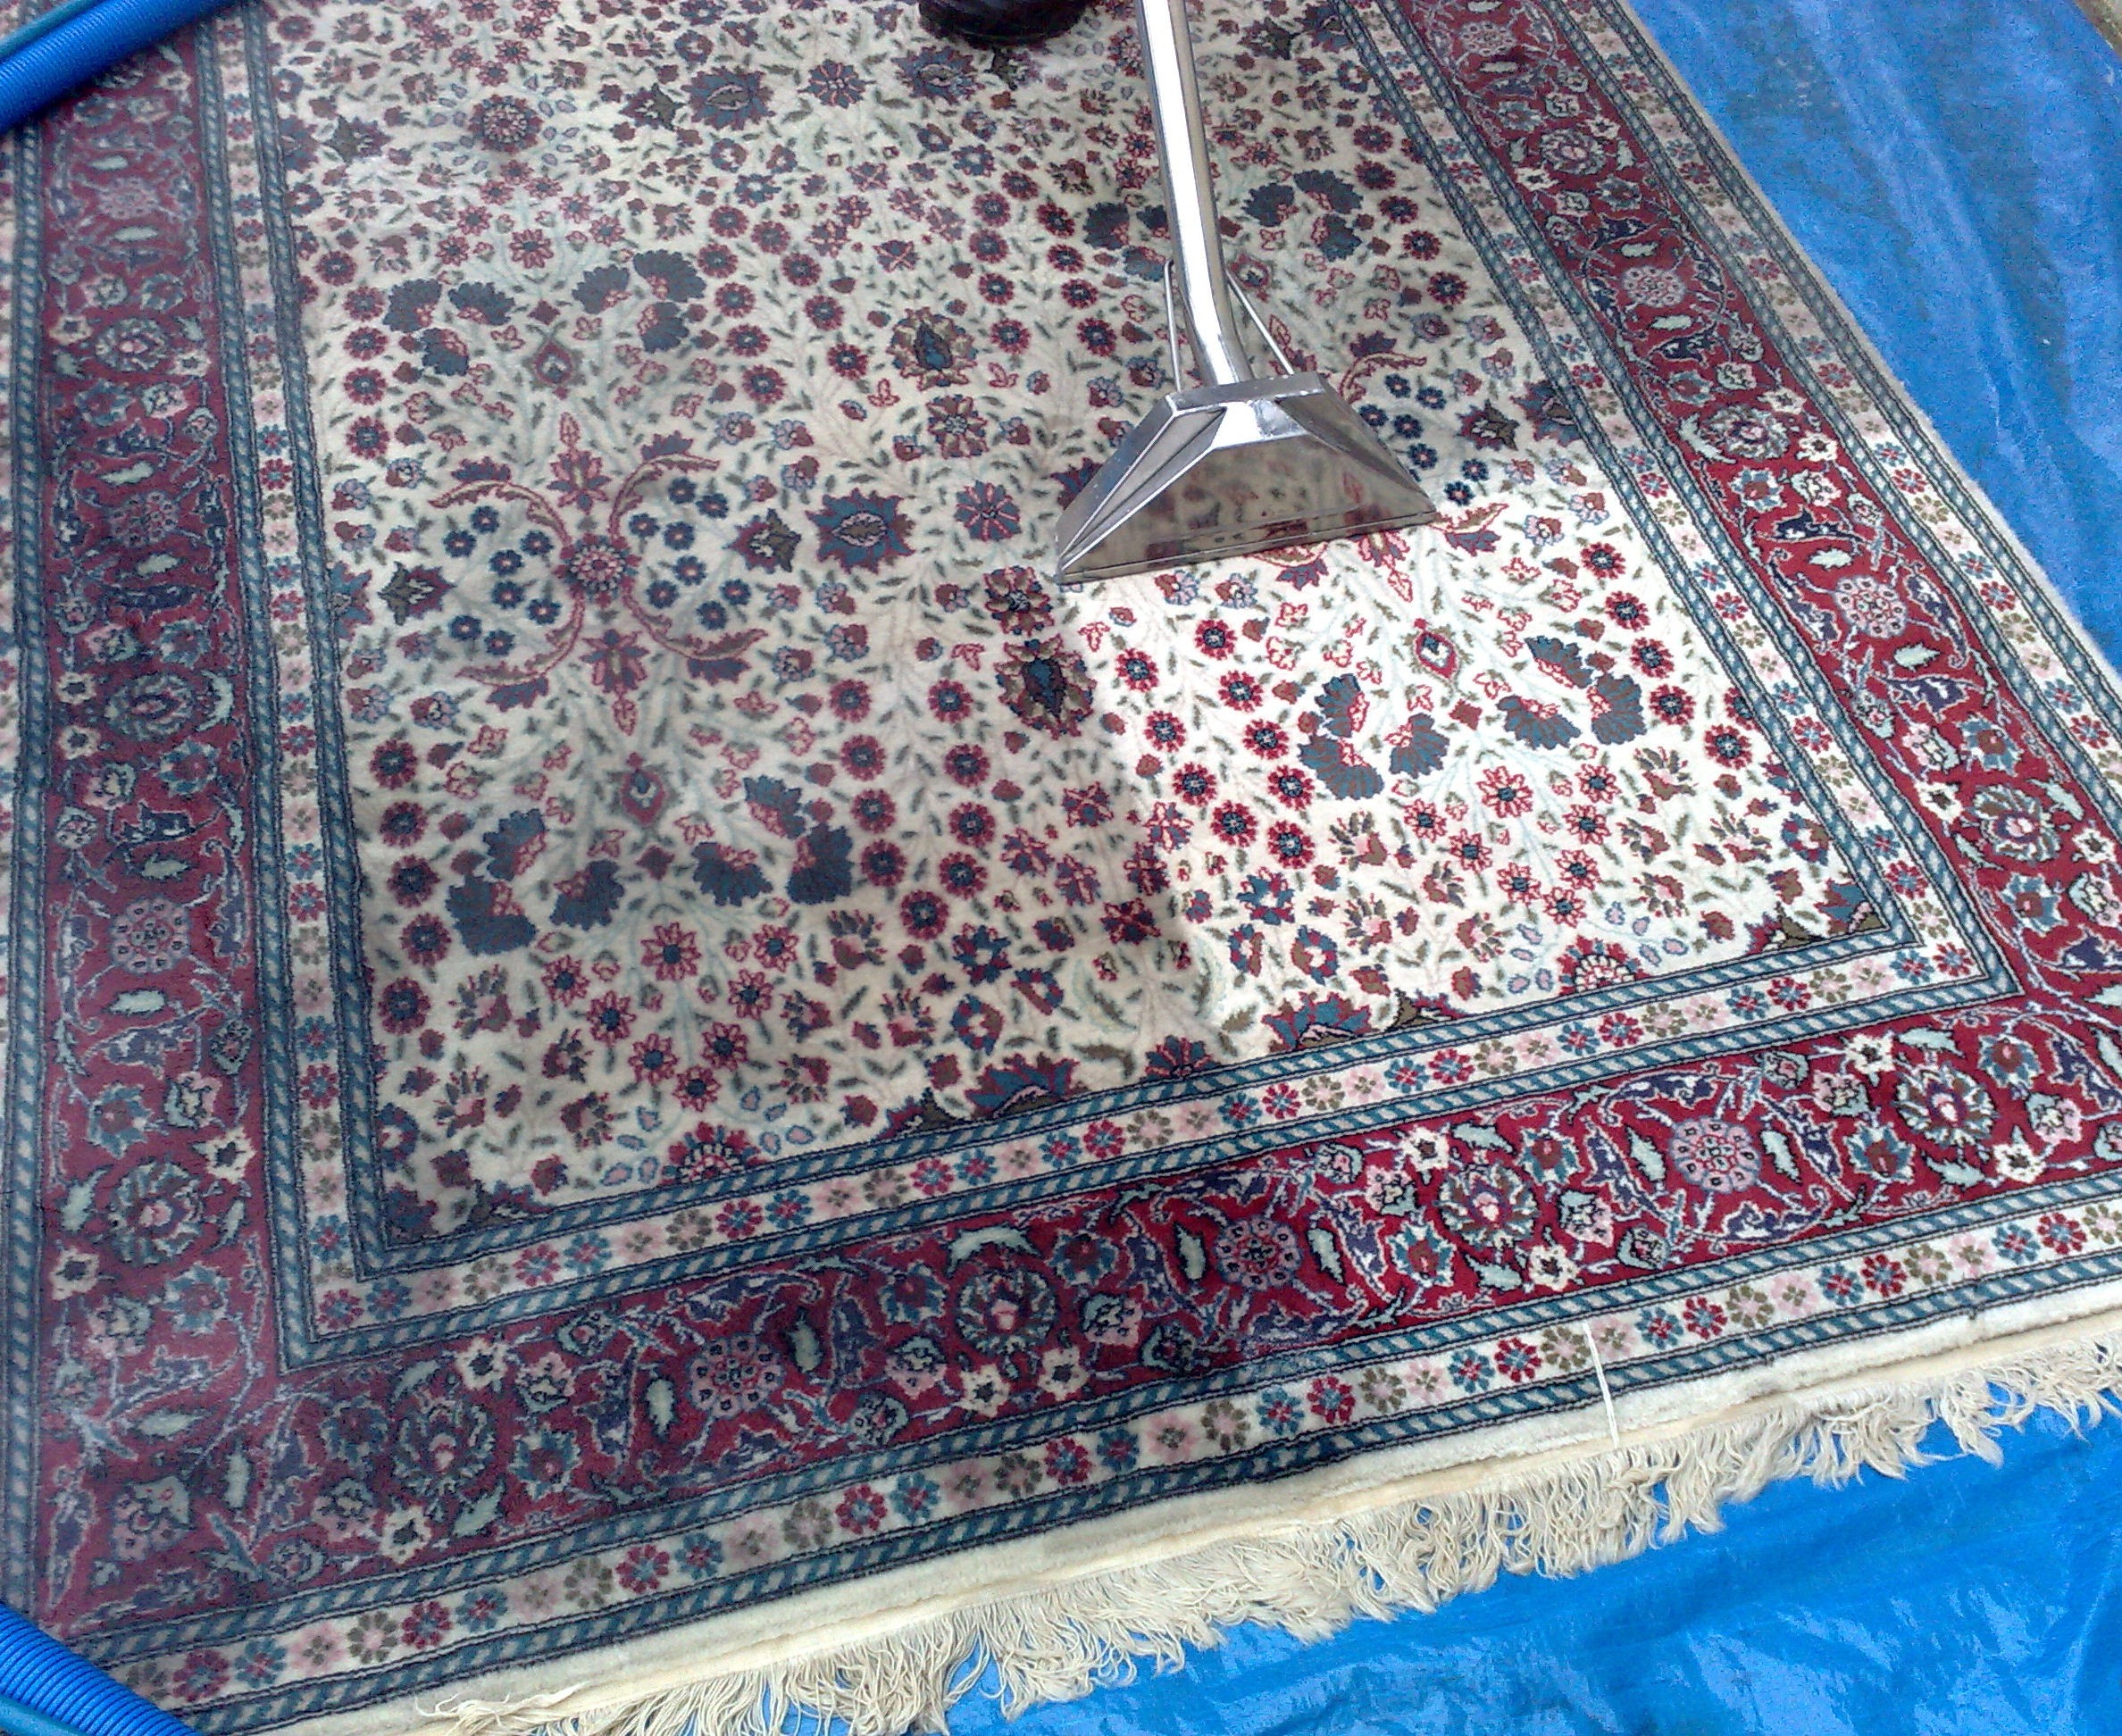 Lavaggio tappeti a Como: come eseguirlo - Crm Pulizie specialisti nella  pulizia di uffici